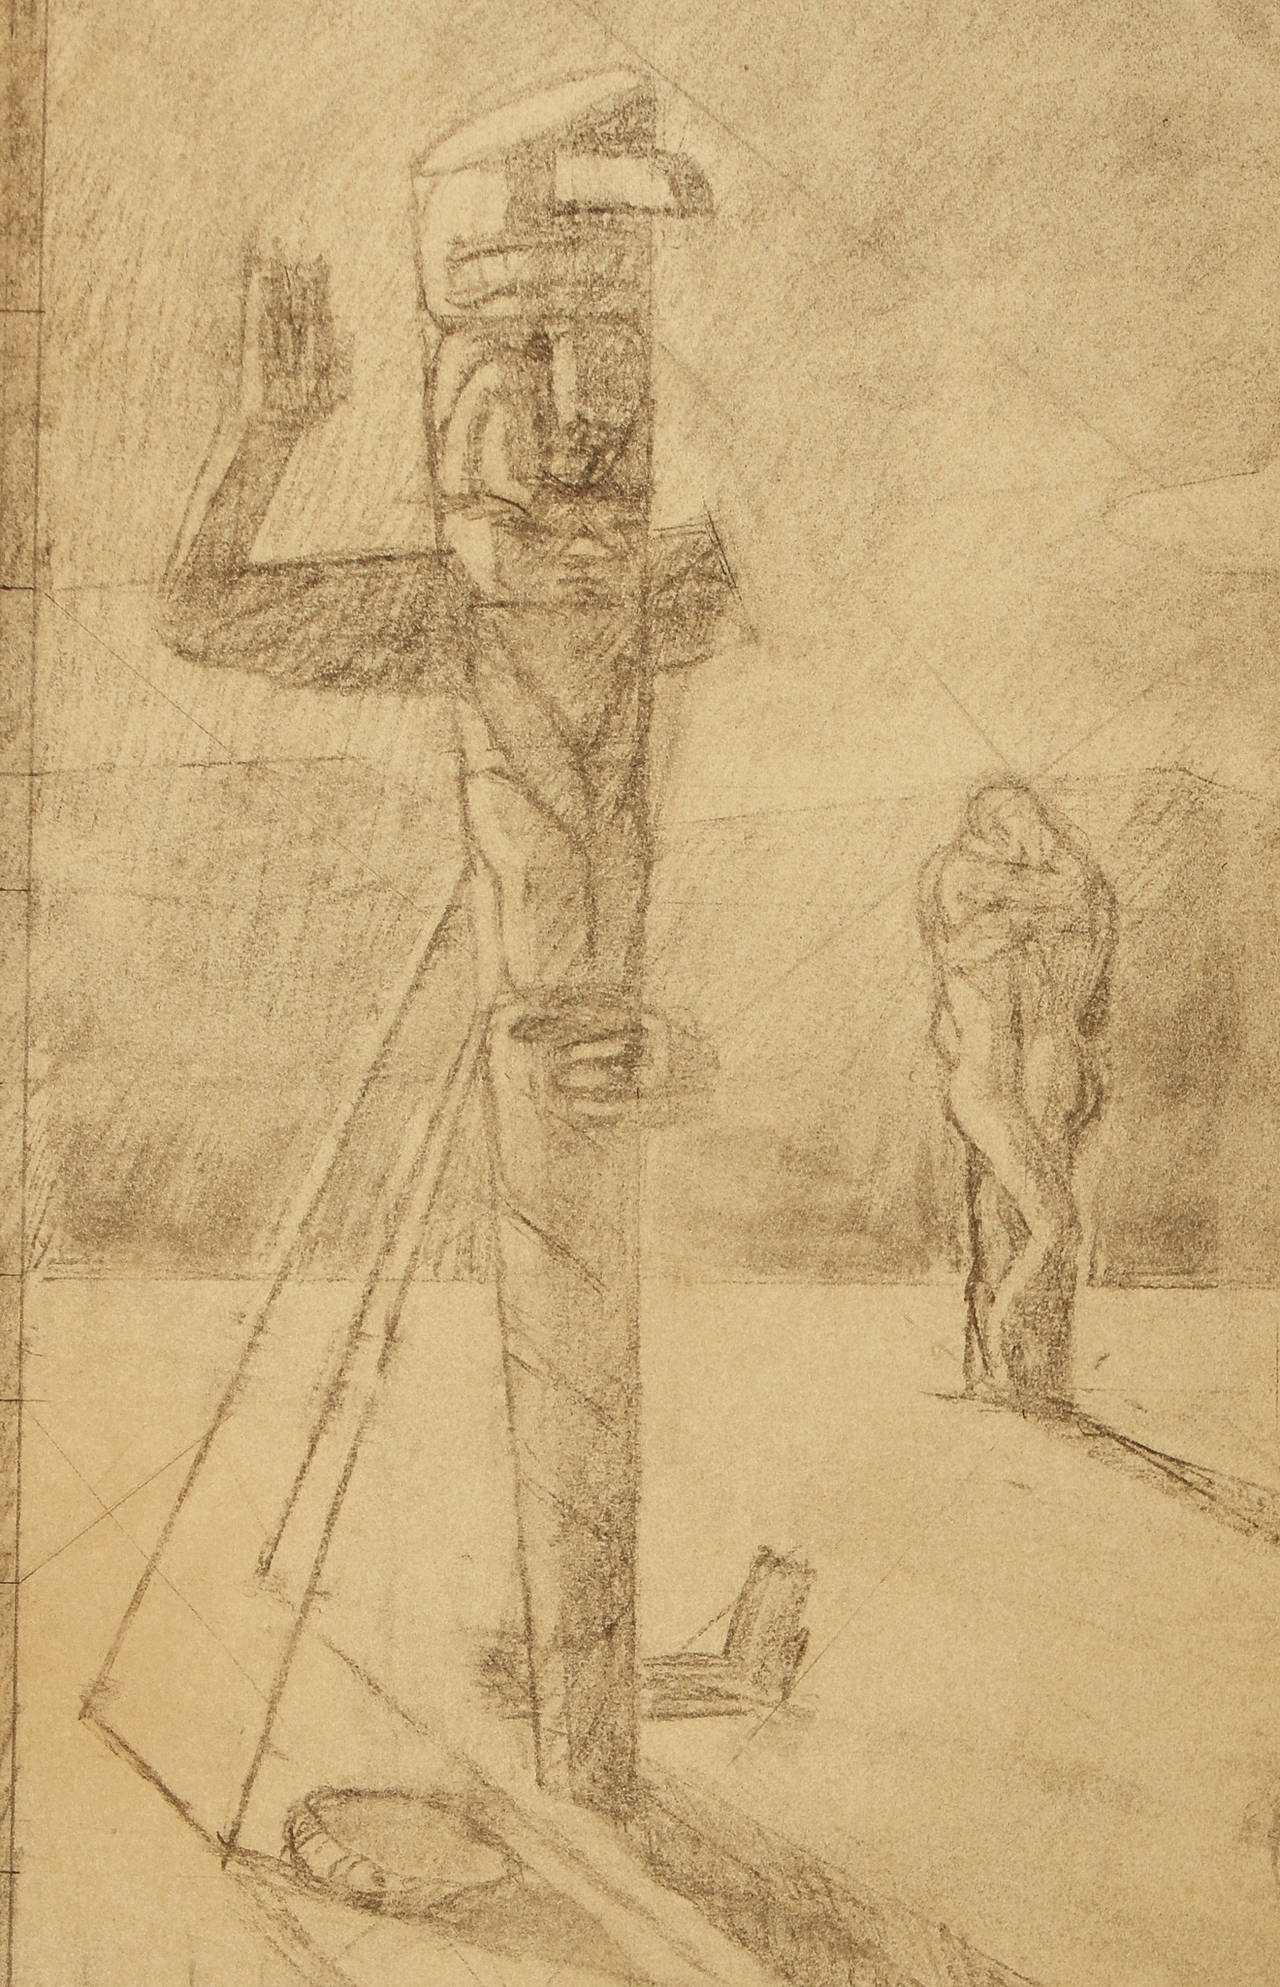 Plus connu pour ses peintures murales de la WPA et de l'Exposition universelle, ce dessin est un exemple rare de l'incursion de Dunbar Beck dans le surréalisme. Sa représentation d'un homme nu face à un totem, avec un bras tendu et un bras cassé, et